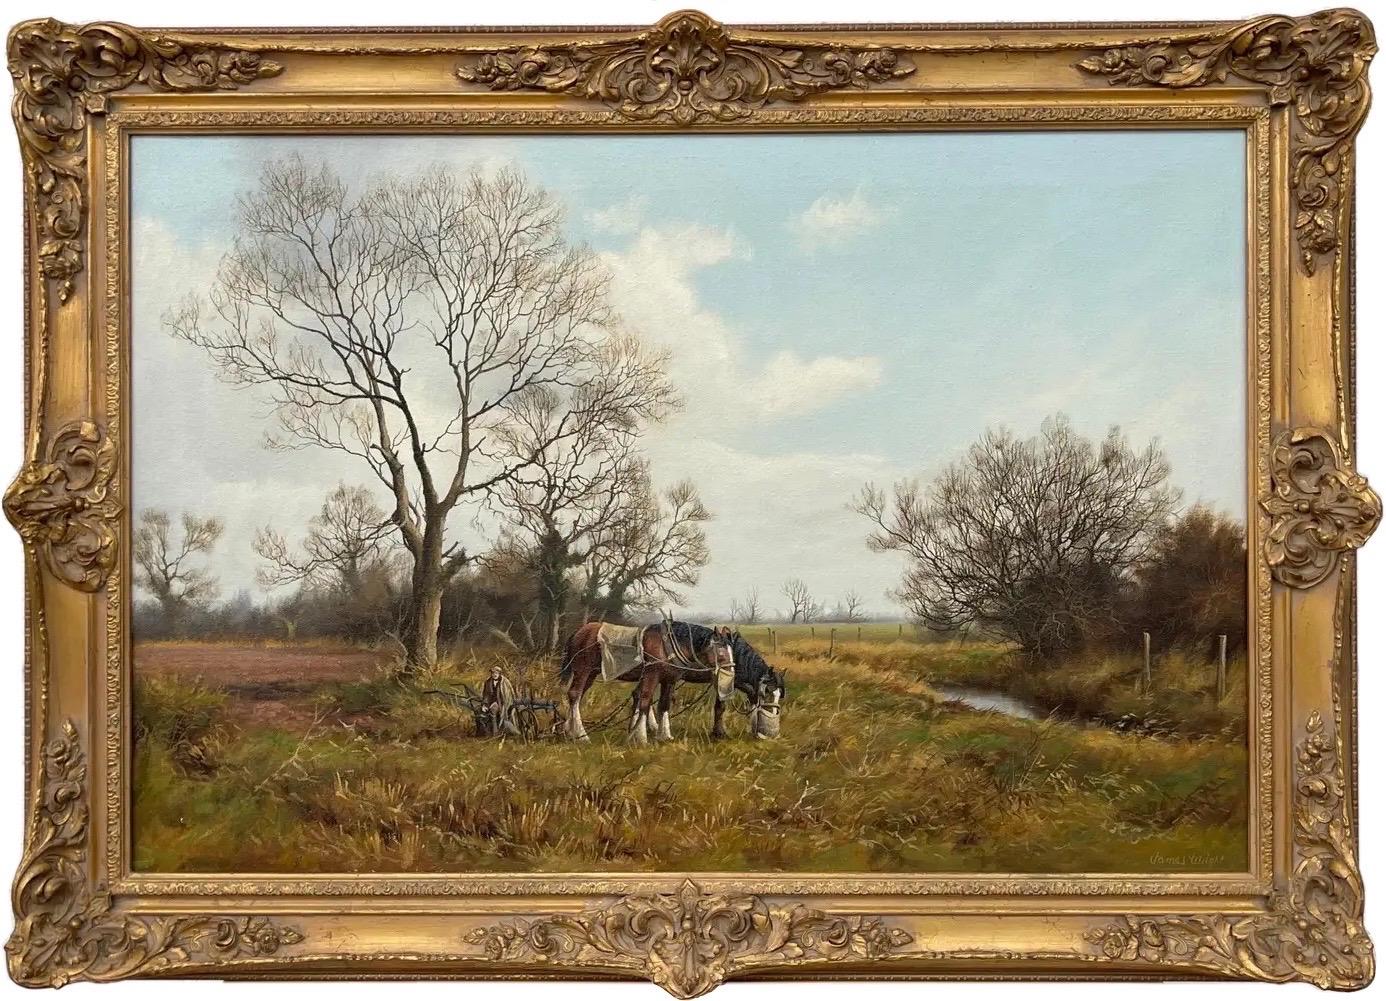 Gemälde einer englischen Landschaft mit Pferden und Pflug von einem modernen britischen Künstler